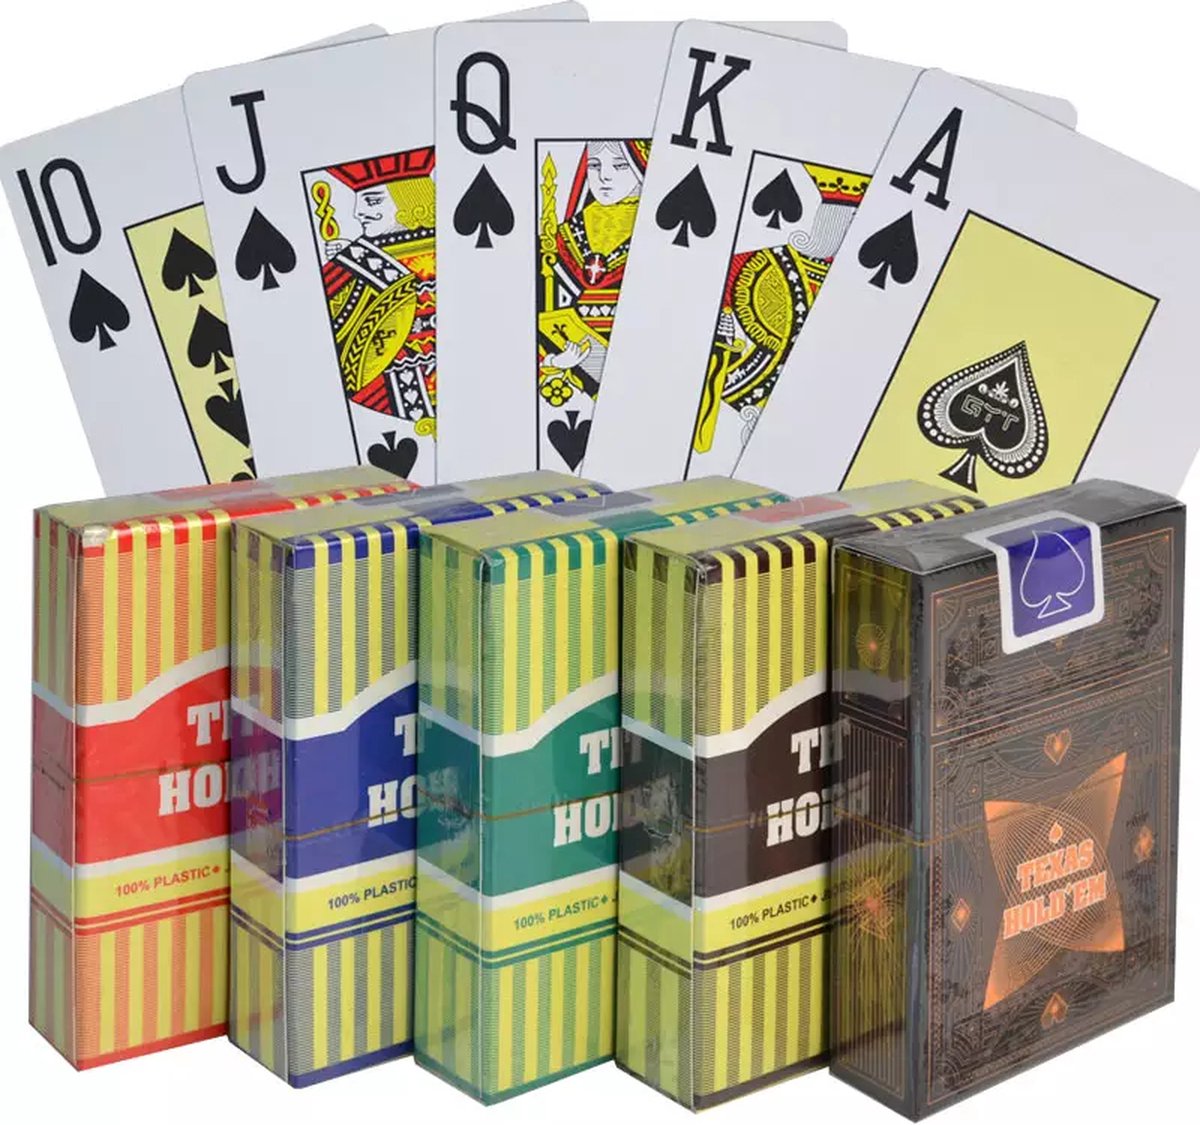 Texas Hold'em - Professionele 100% plastic Pokerkaarten | 100% waterdicht | speelkaarten | kaartspel | poker | officiële afmetingen van pokerkaarten | Goud / Geel